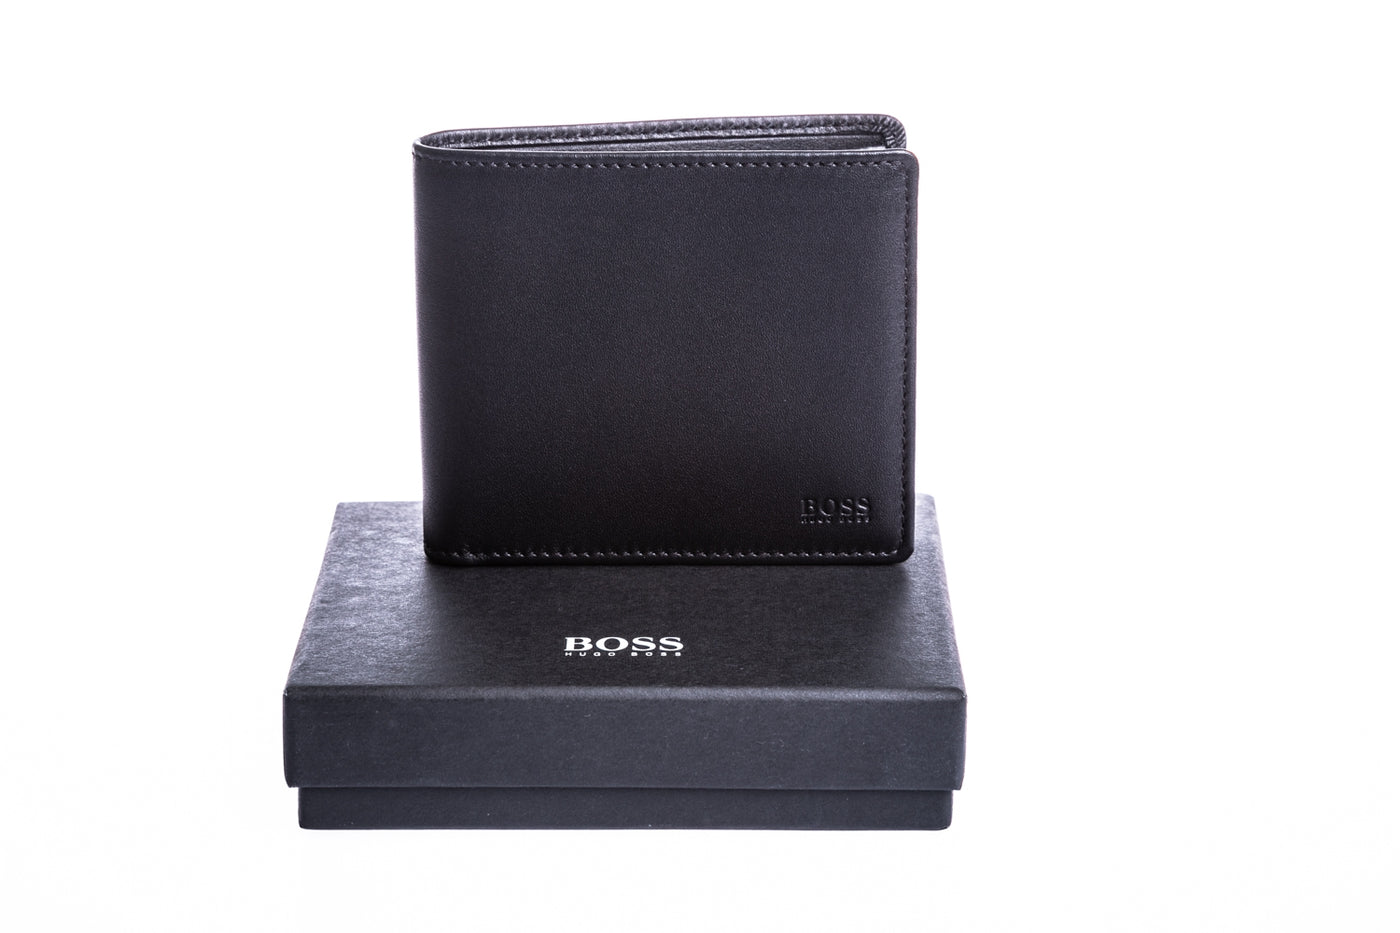 BOSS Majestic_S 8CC Wallet in Black